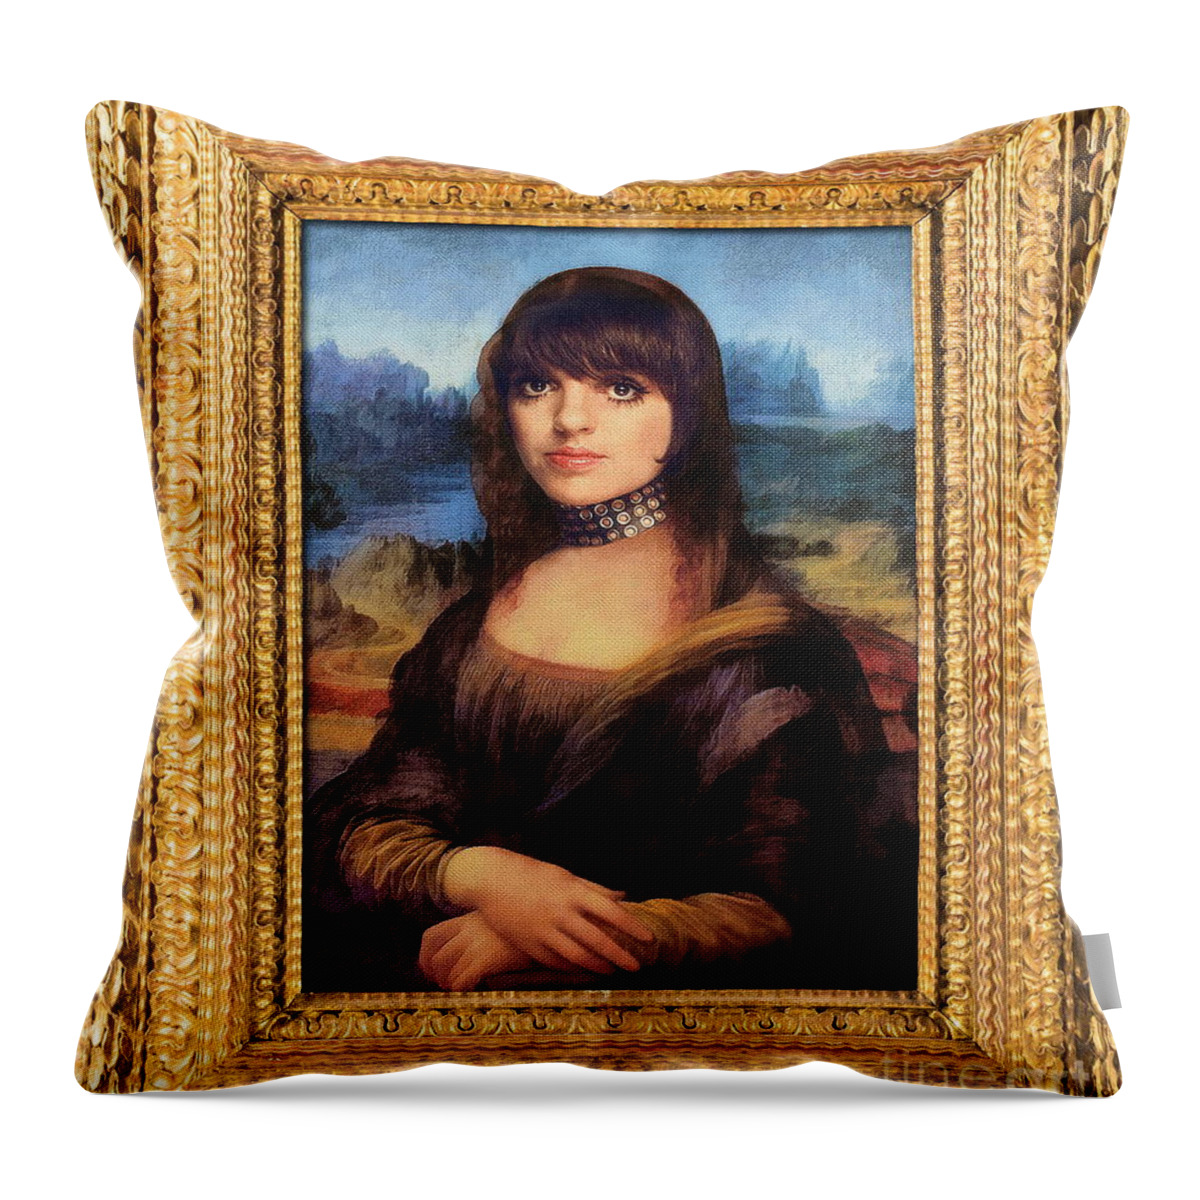 Mona Lisa Throw Pillow featuring the digital art Mona-Liza by Jerzy Czyz